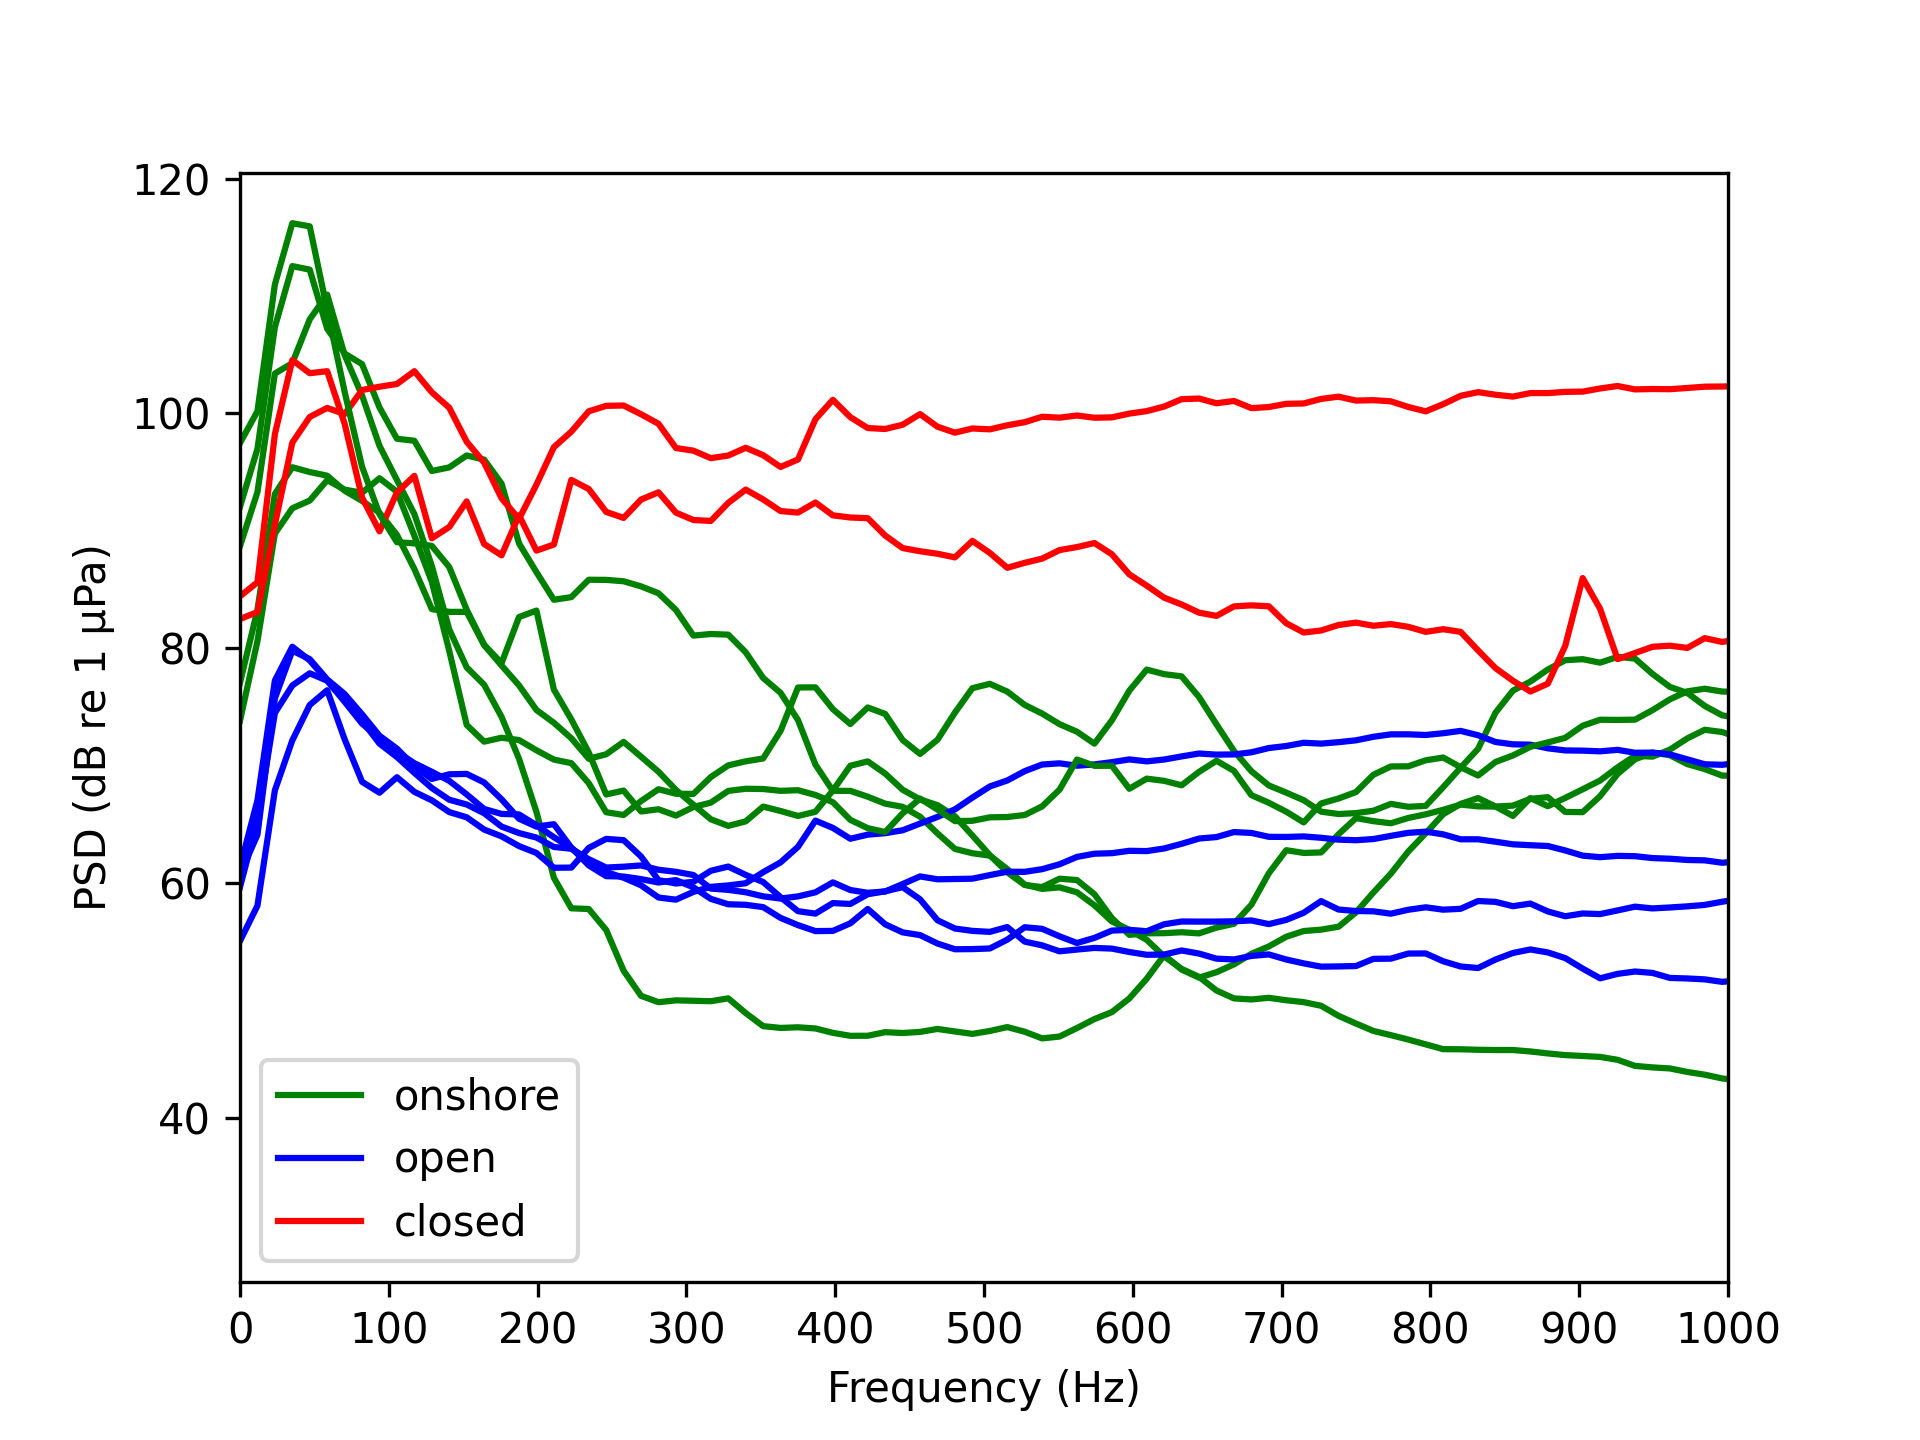 Et plott som har ulike fargete linjer for de ulike anleggstyper som viser mengde lyd ved ulike frekvenser hvor de grønne og blå linjer har topper på lav frekvens, mens den røde er mer jevn uten topper.